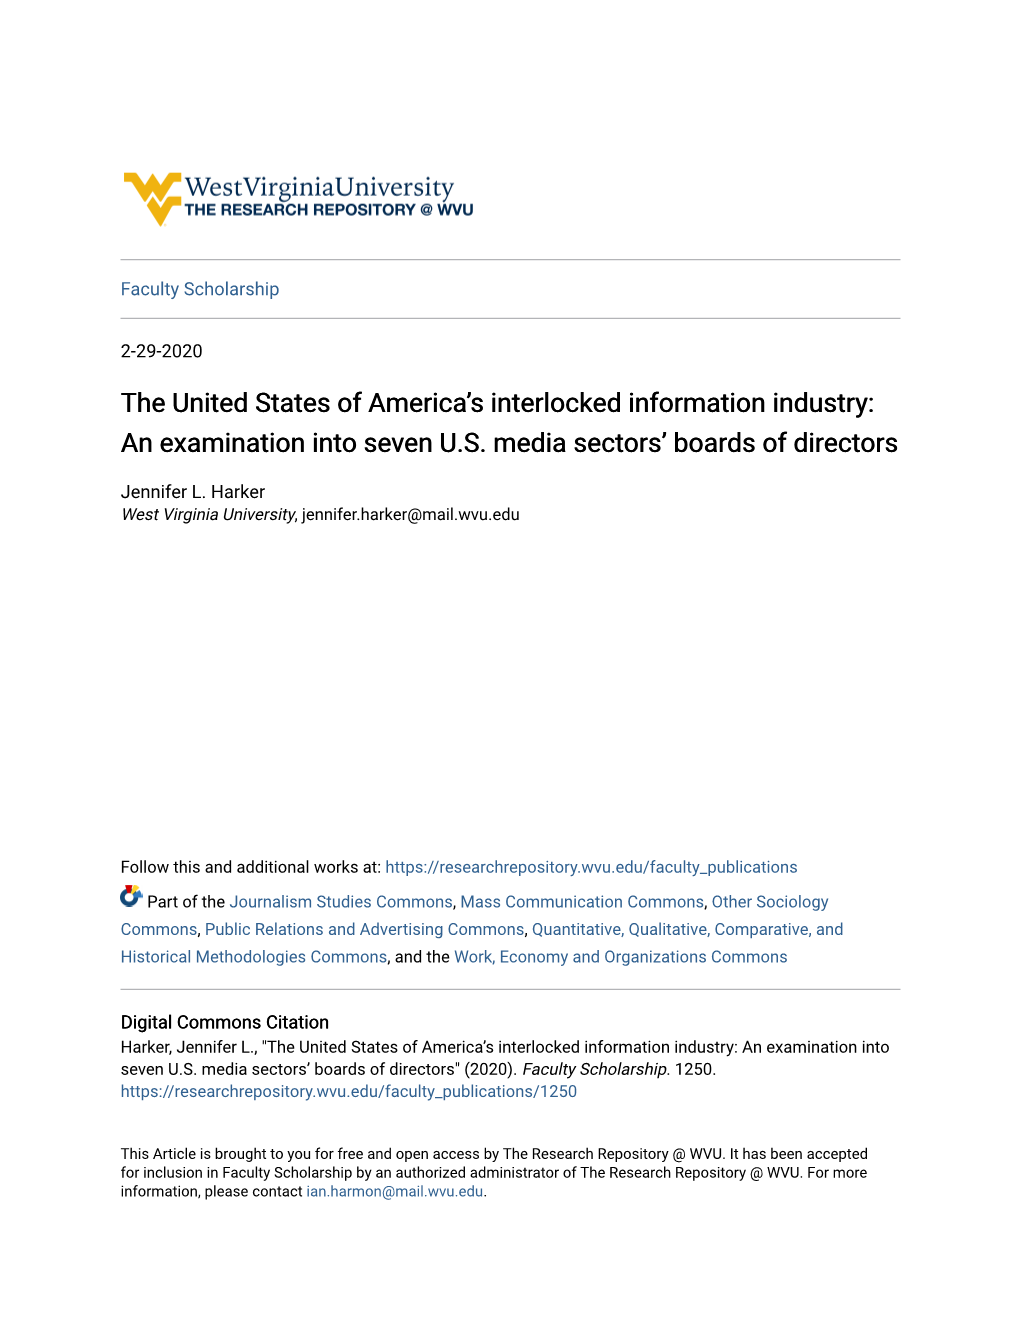 An Examination Into Seven US Media Sectors' Boards of Directors